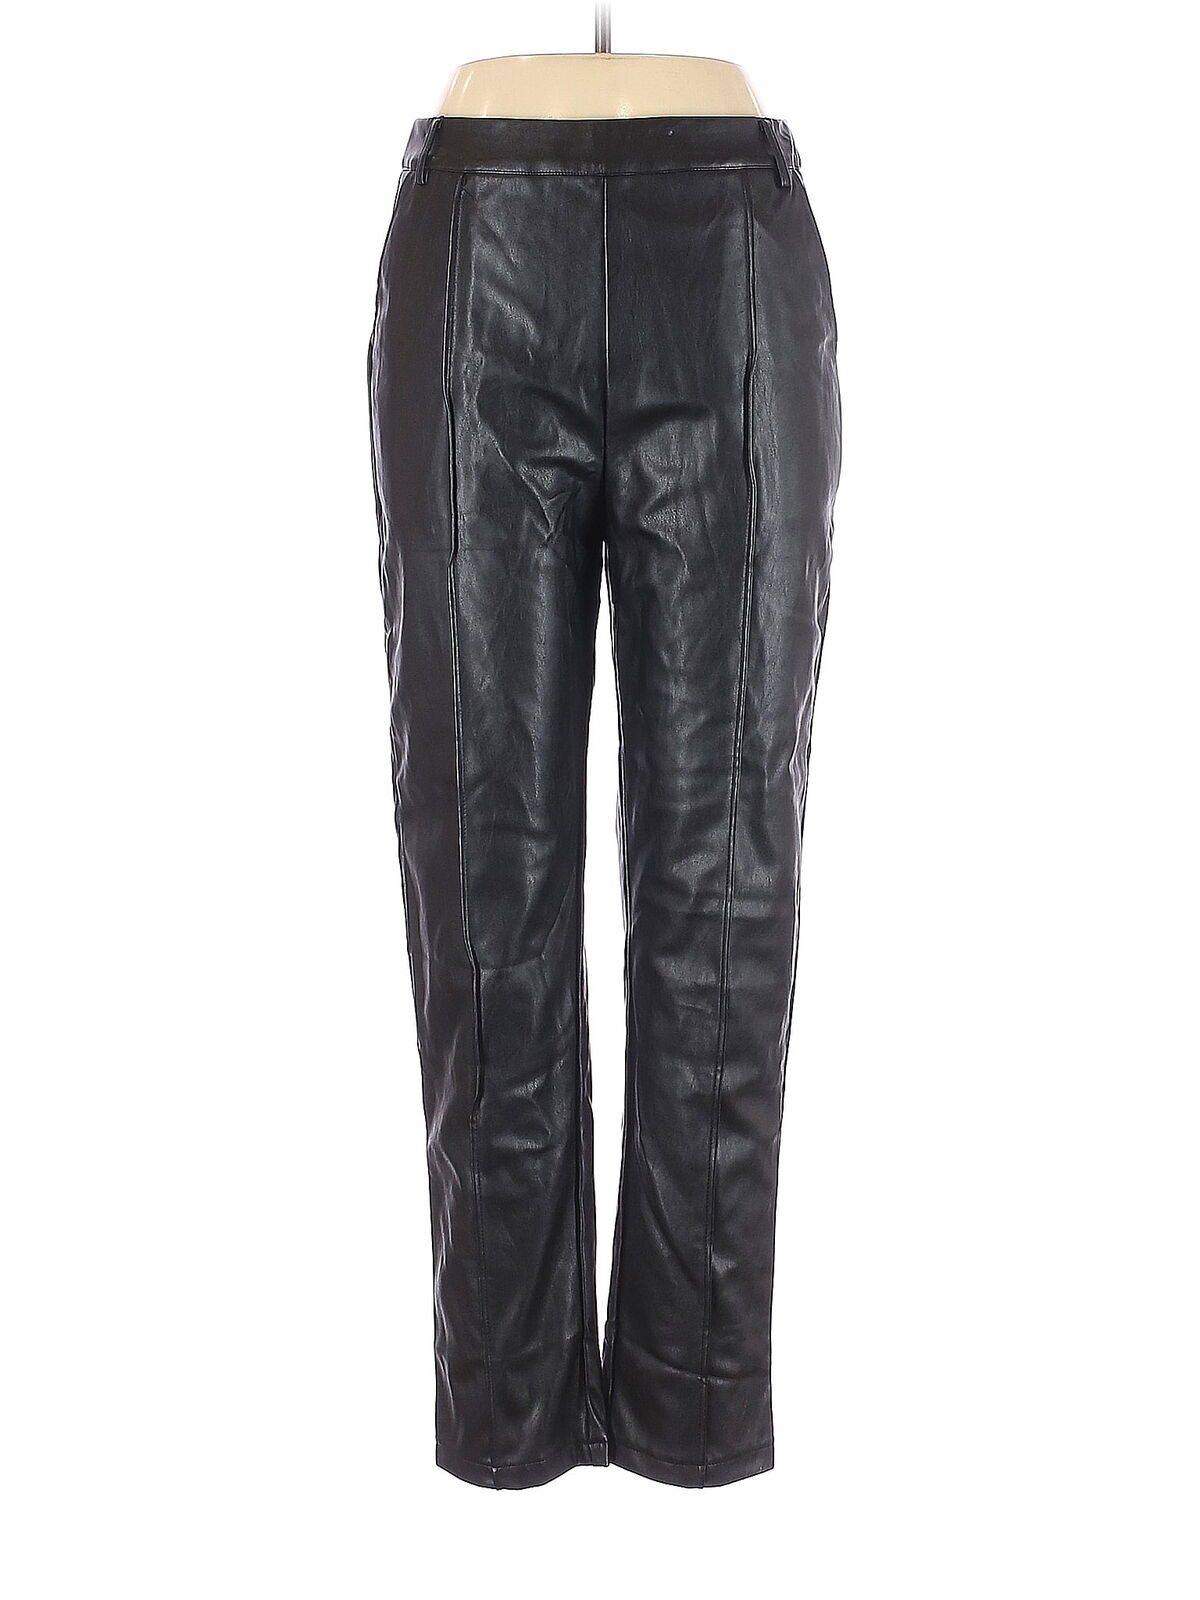 Shein Women Black Faux Leather Pants L - image 1